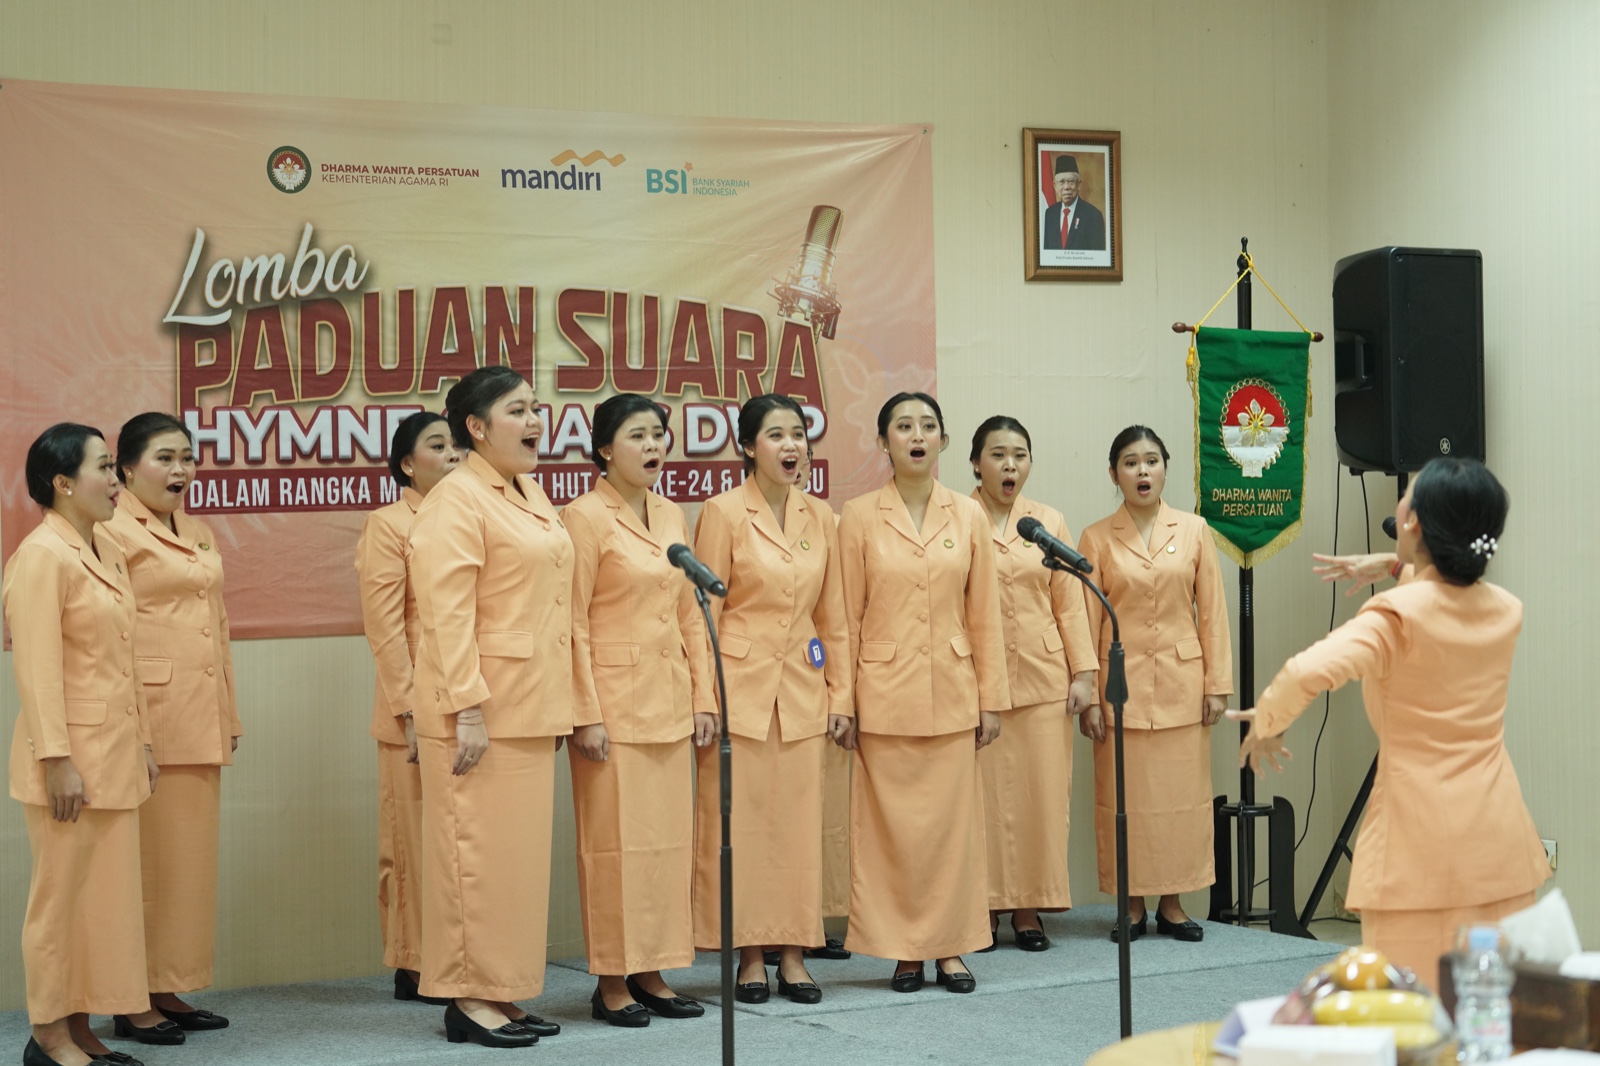 DWP Kemenag Gelar Lomba Paduan Suara Mars dan Hymne Dharma Wanita Persatuan